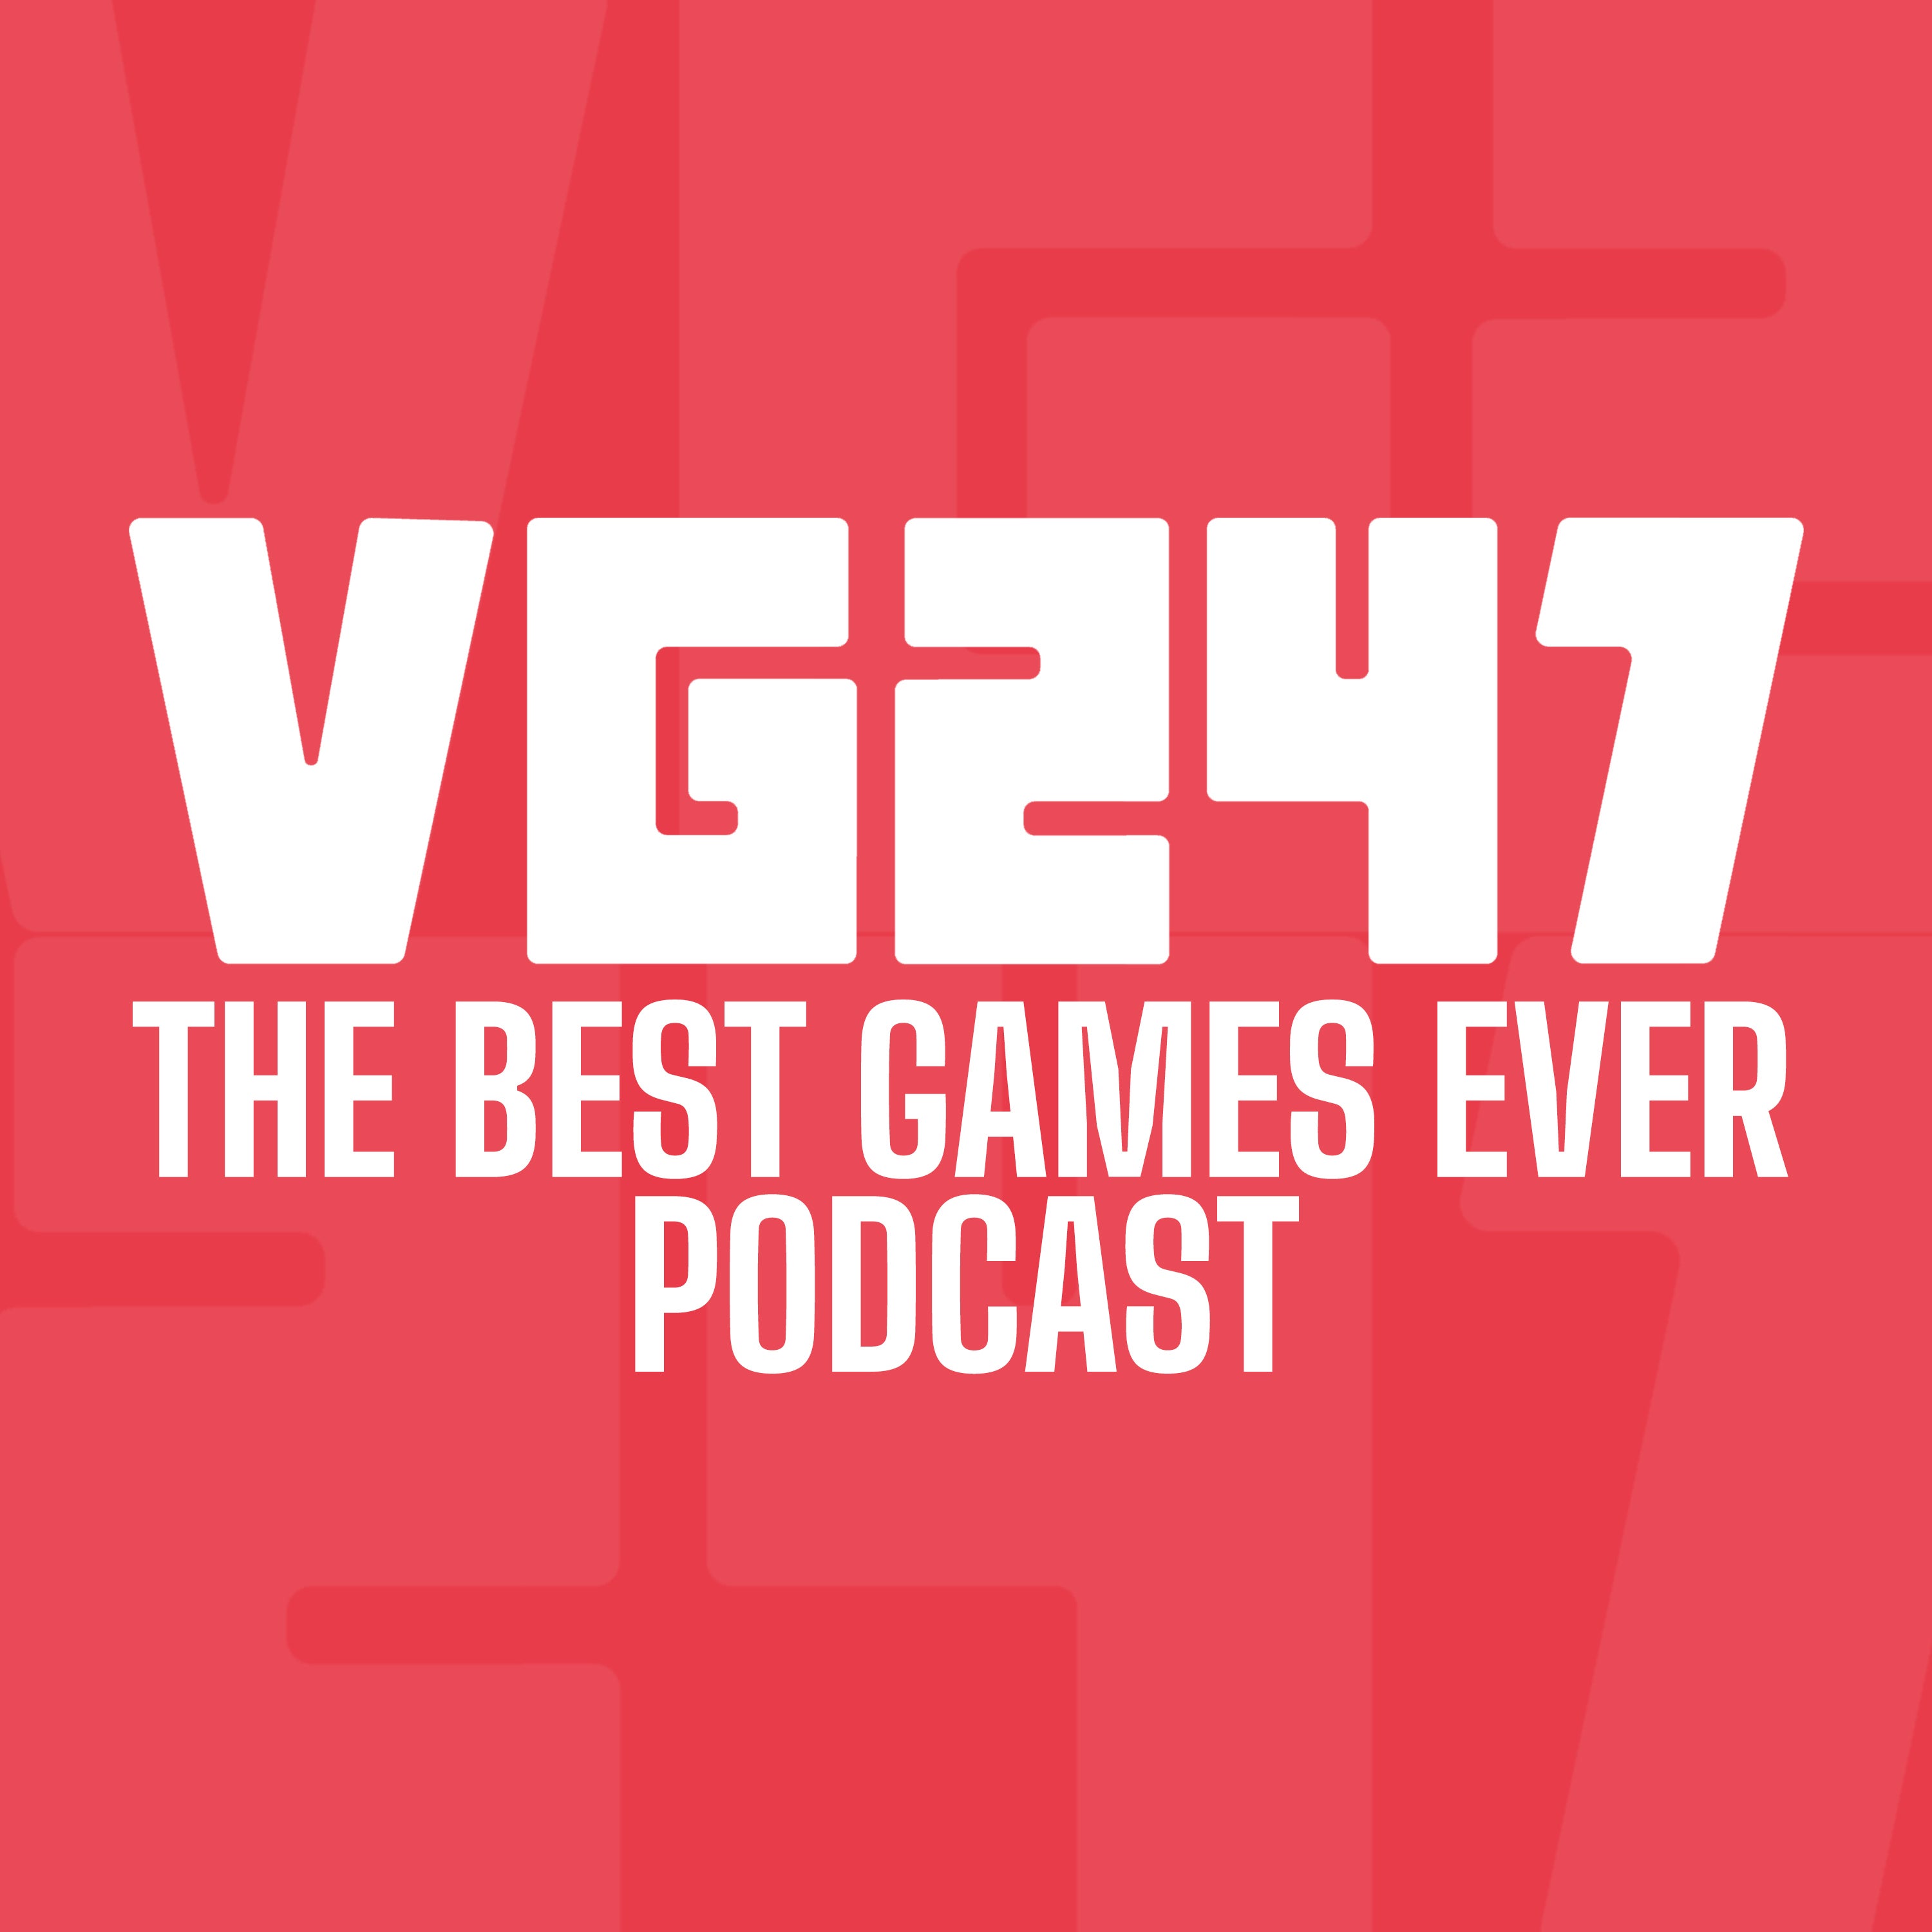 شعار لأفضل ألعاب VG247 على الإطلاق Podcast.  نص أبيض على خلفية حمراء.